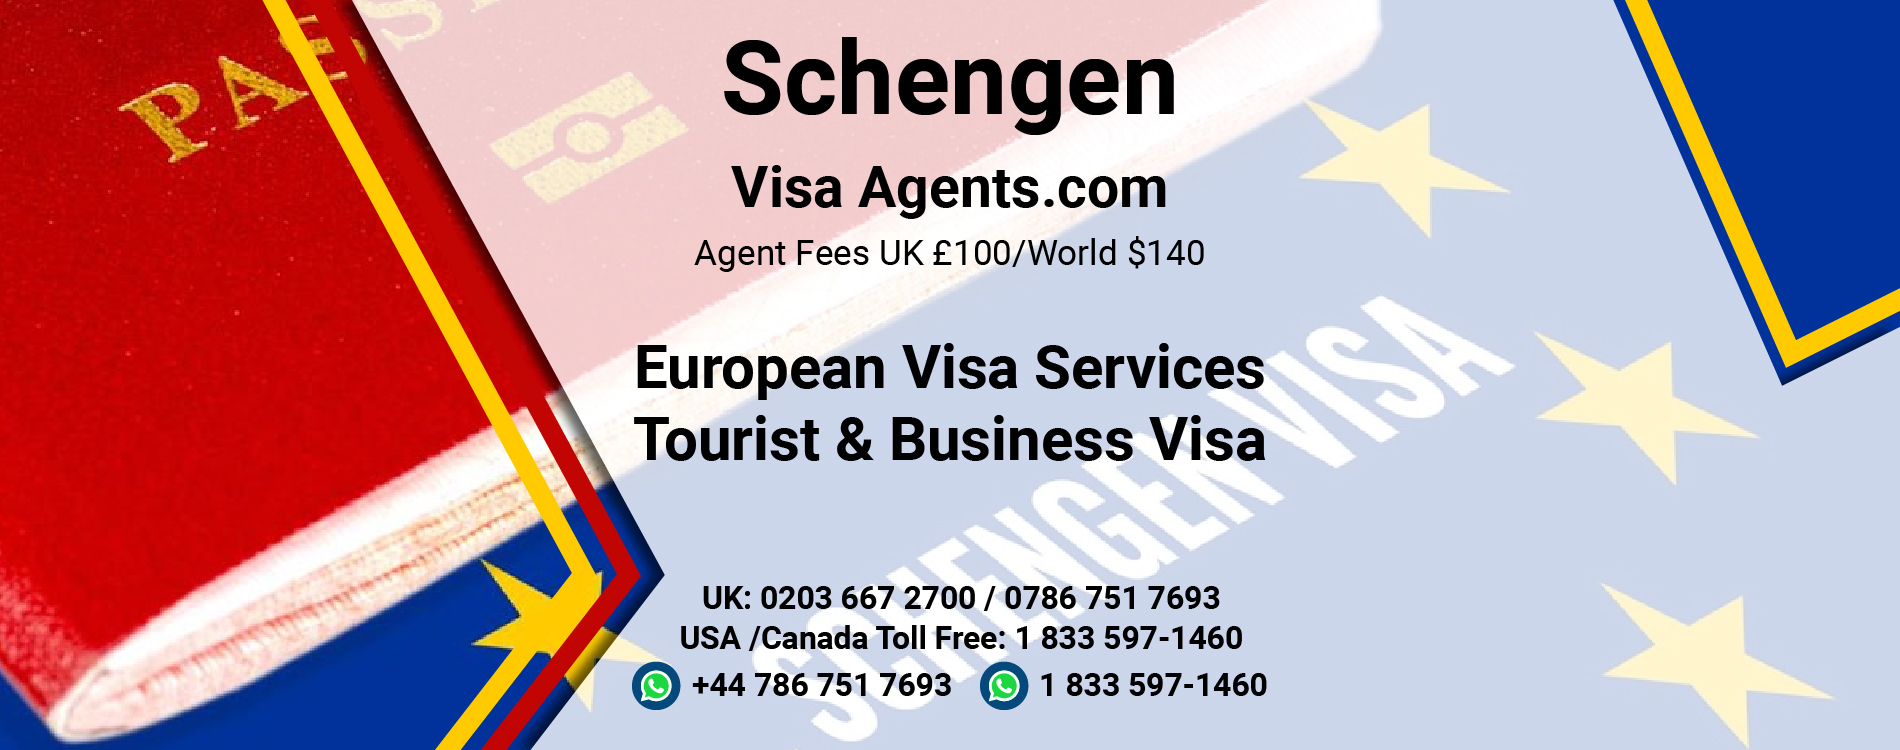 schengen tourist visa agents